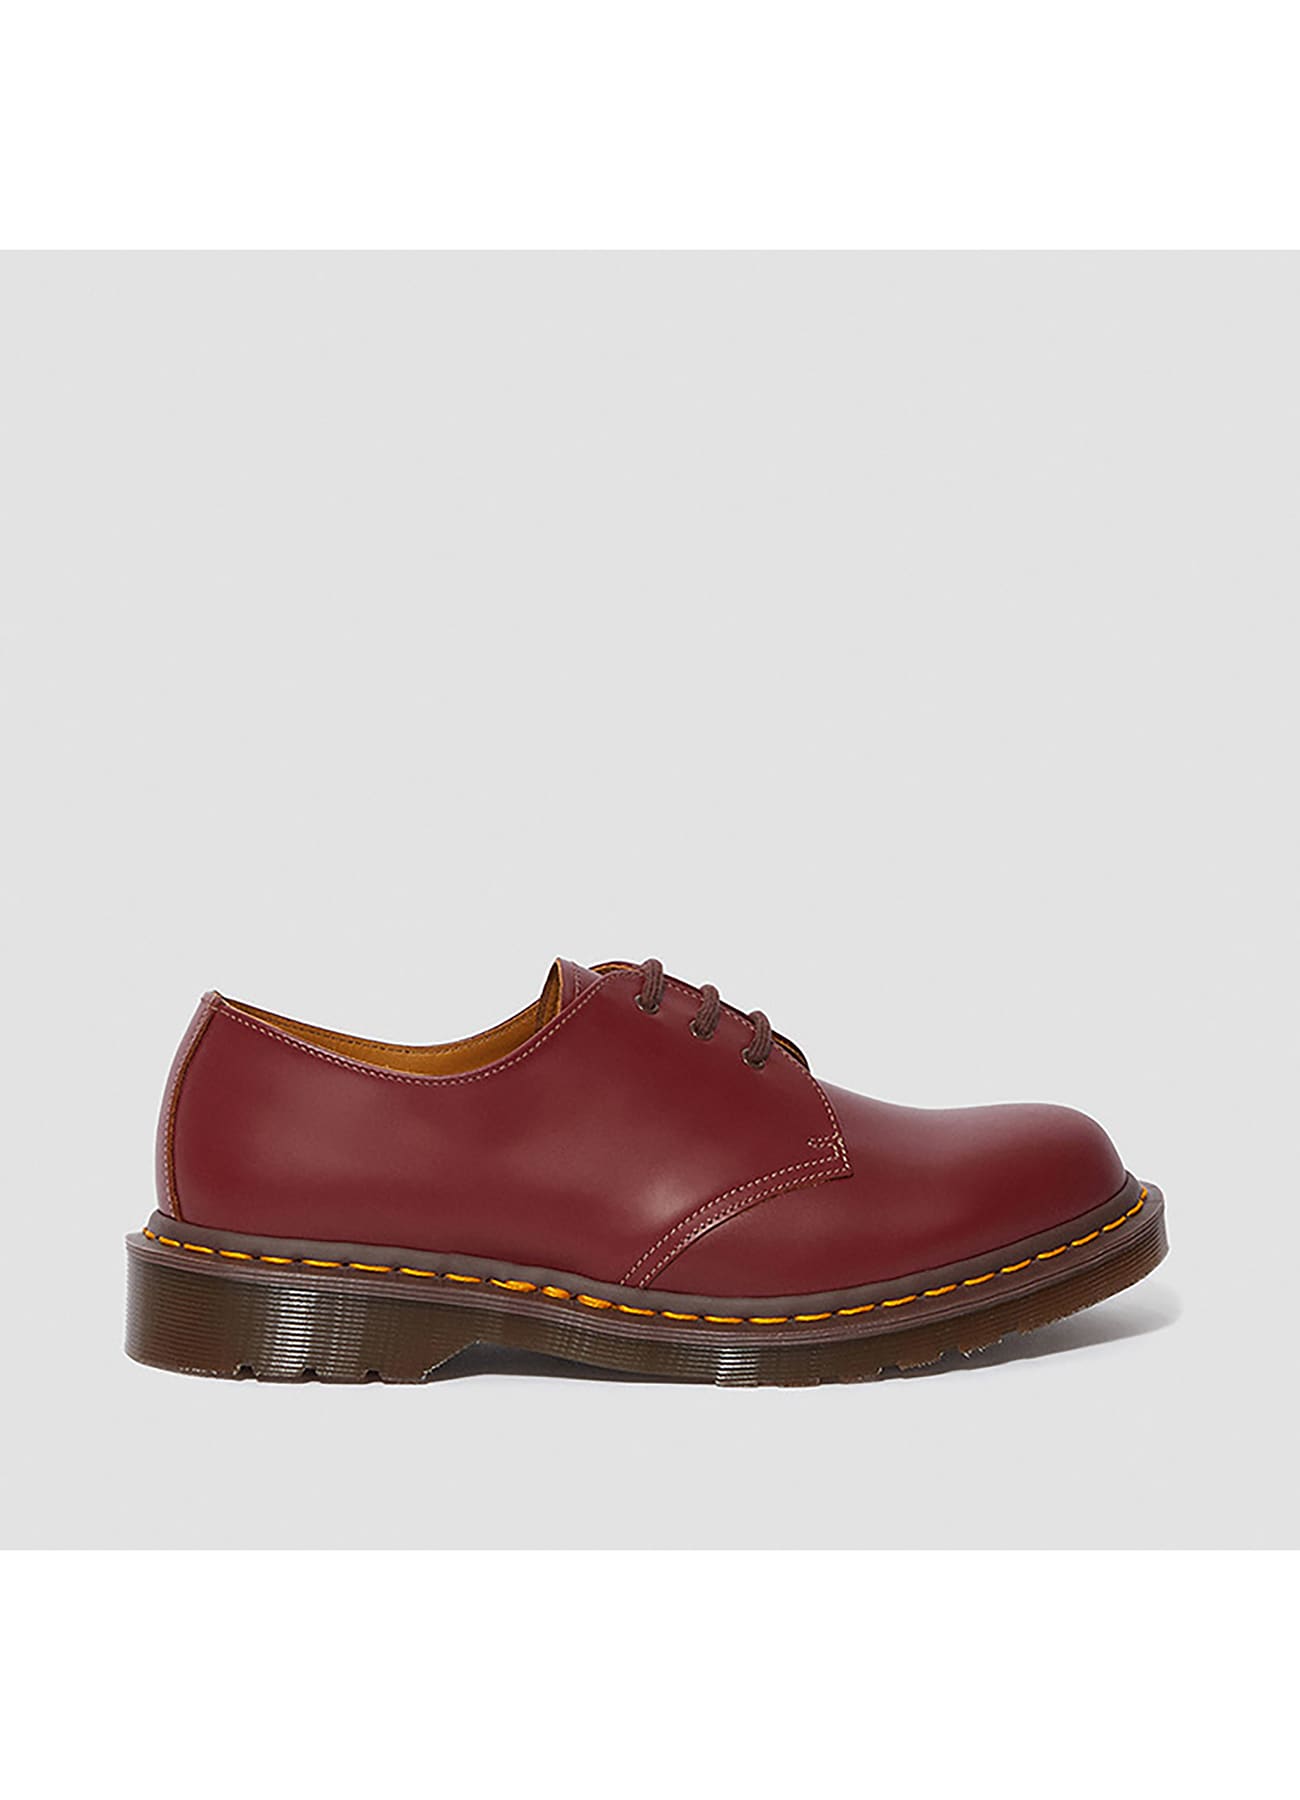 Dr.Martens 3ホールブーツ レッド UK7(26センチ) - 靴